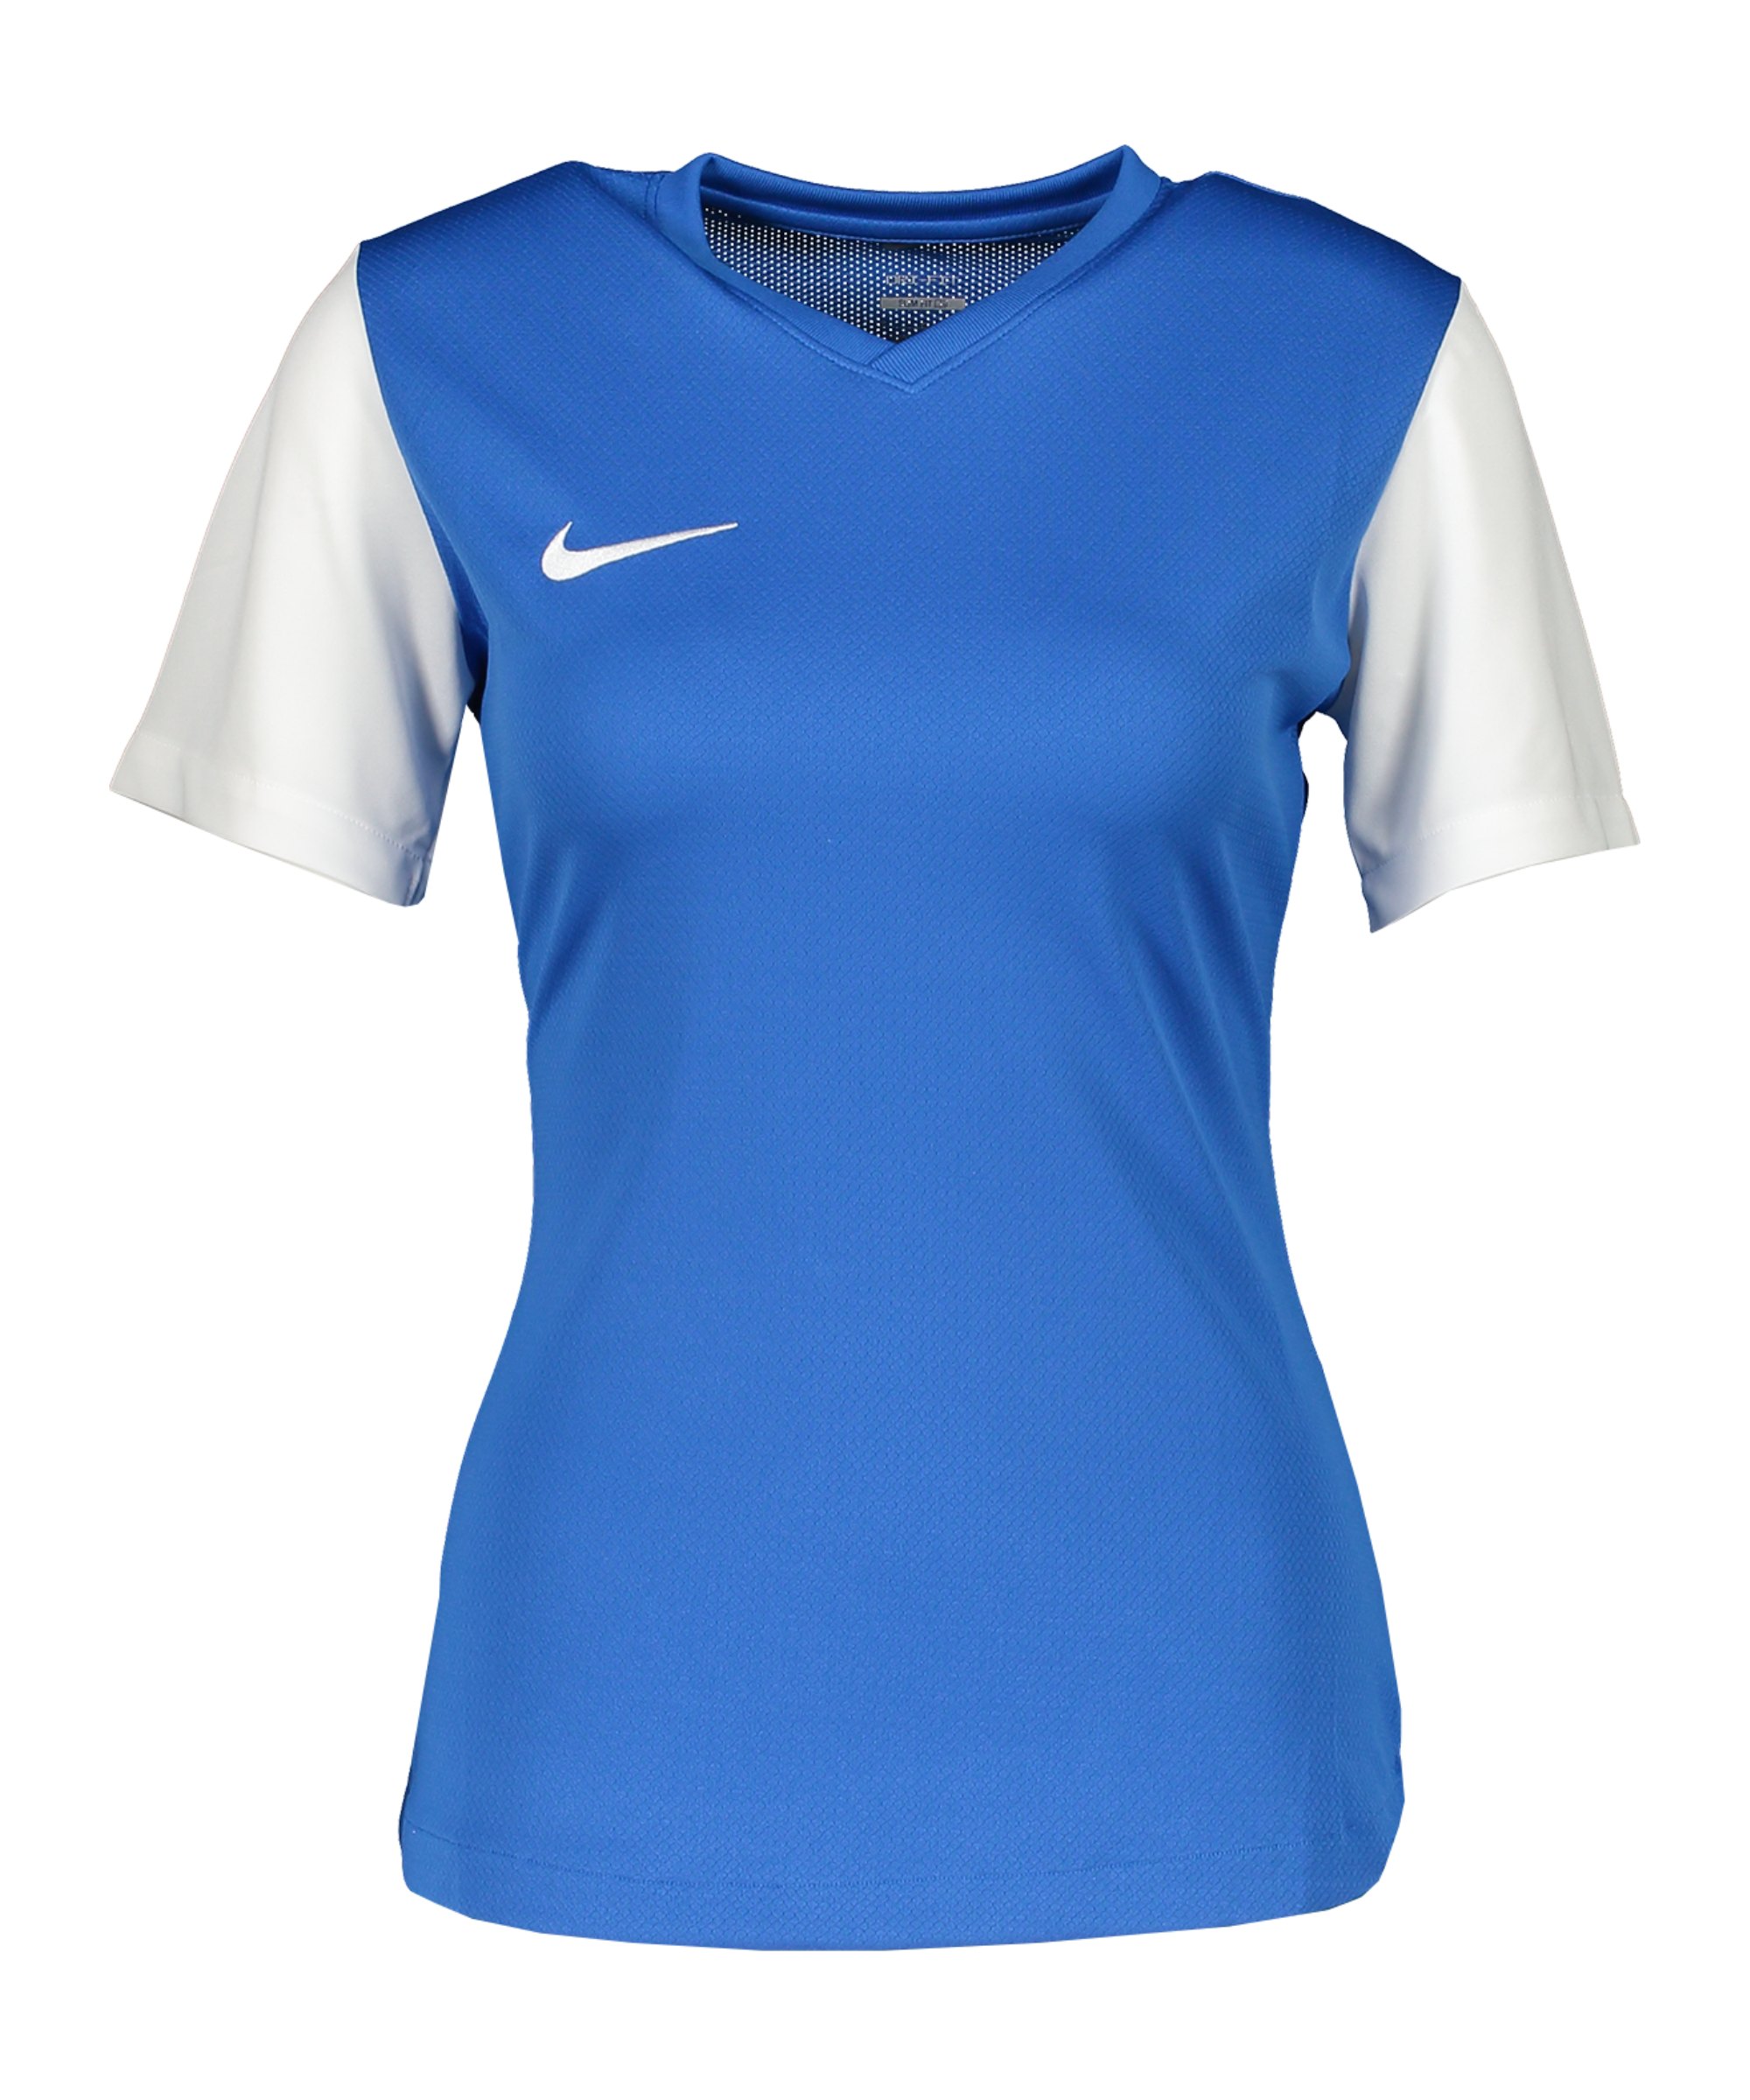 Nike Tiempo Premier II Trikot Damen Blau F463 - blau